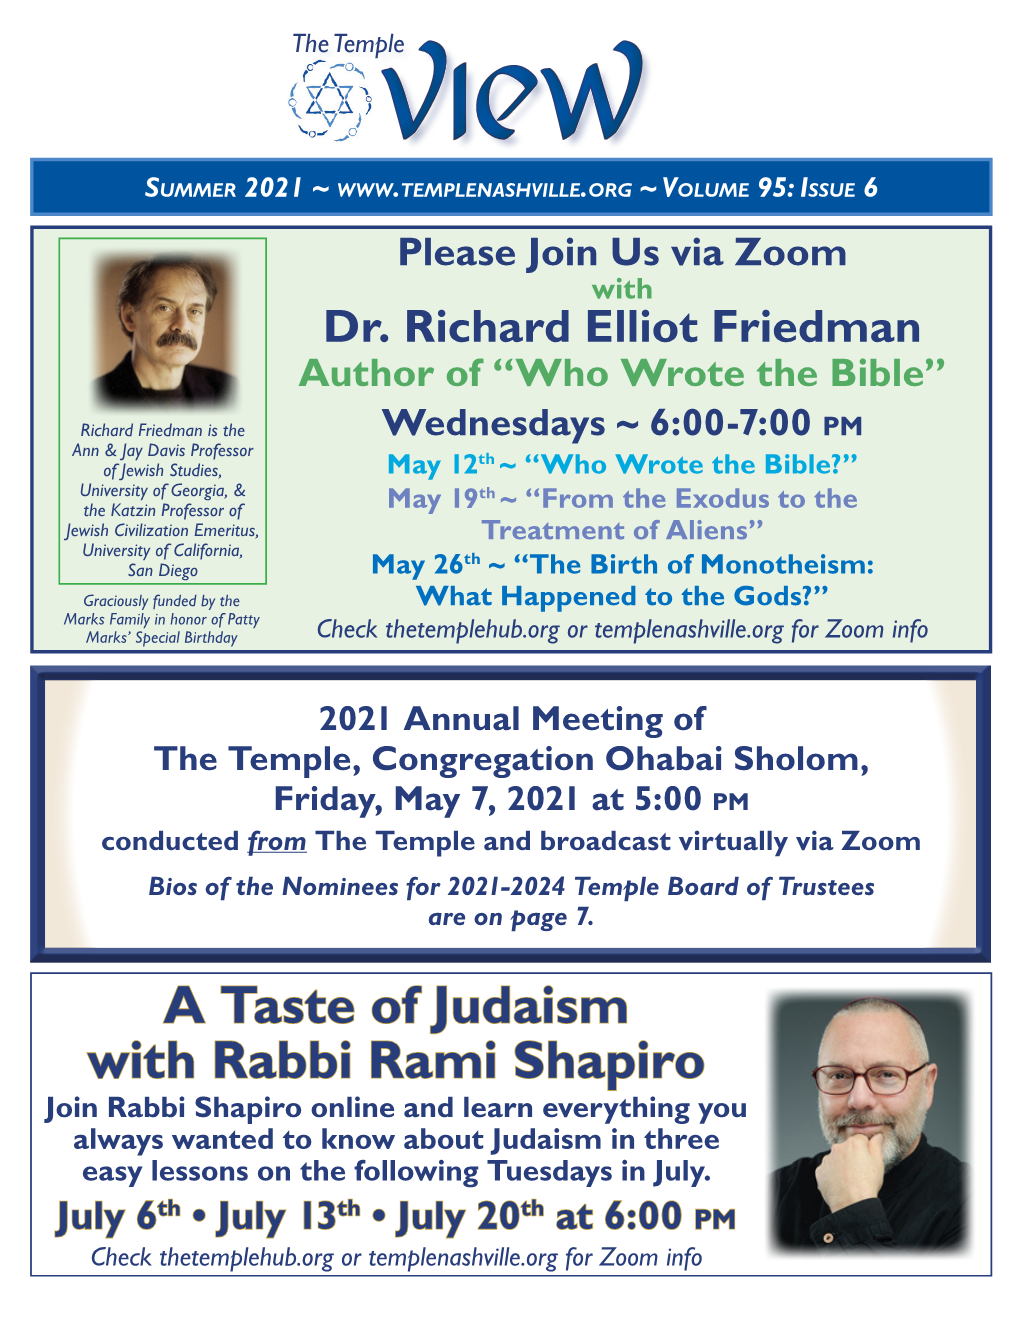 A Taste of Judaism with Rabbi Rami Shapiro